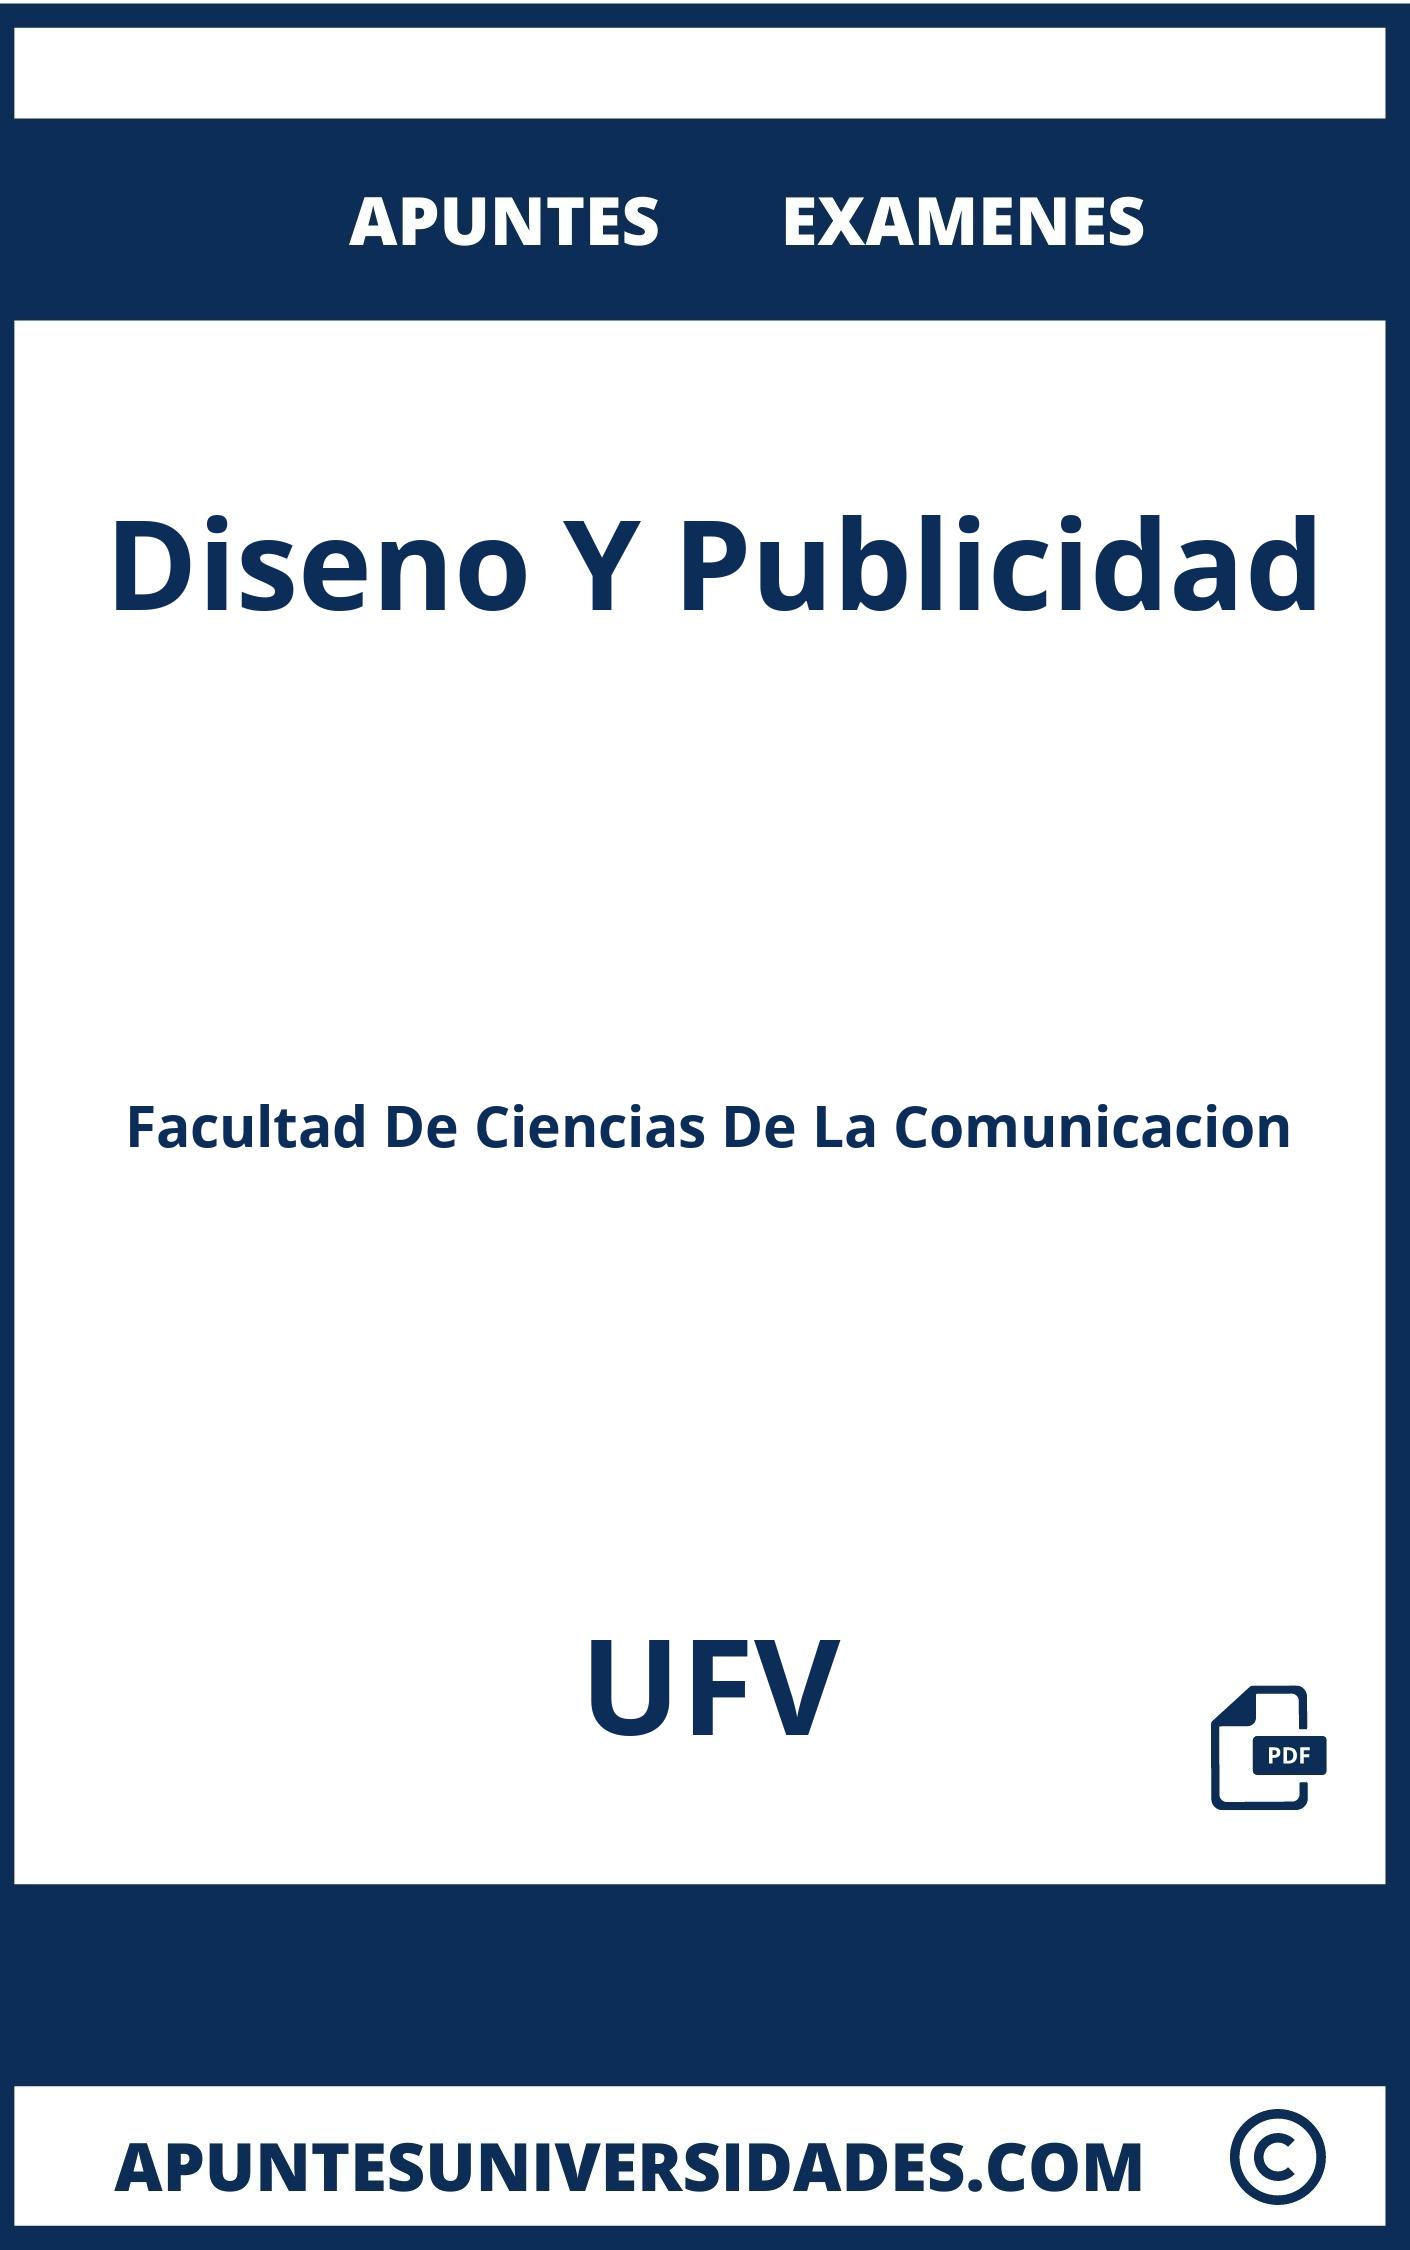 Examenes y Apuntes Diseno Y Publicidad UFV